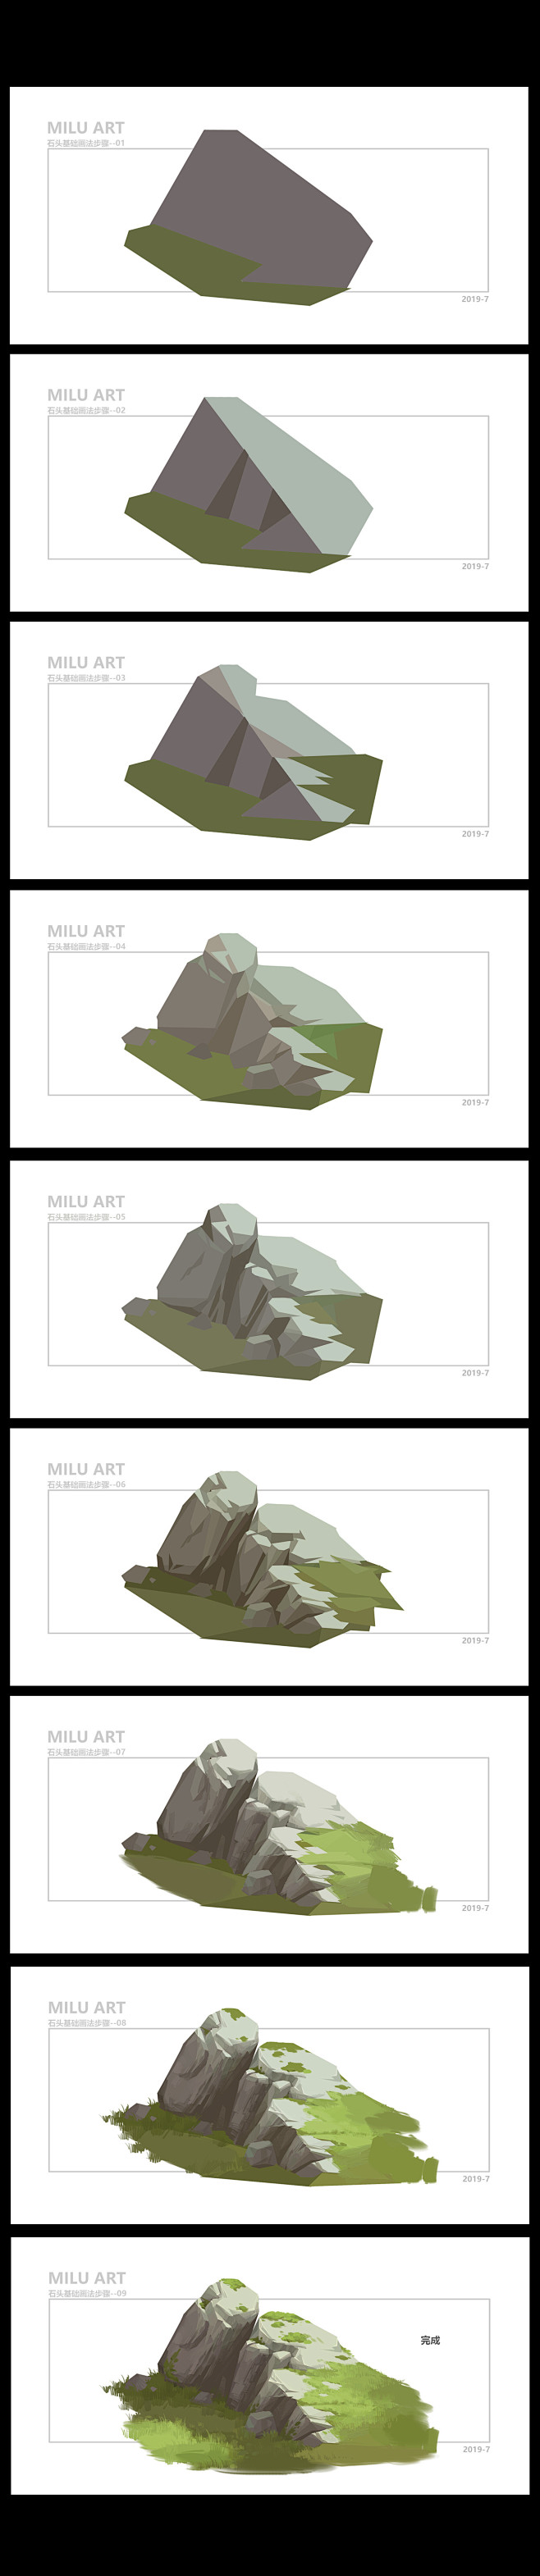 画了一个石头基础画法的步骤图，附带GIF...